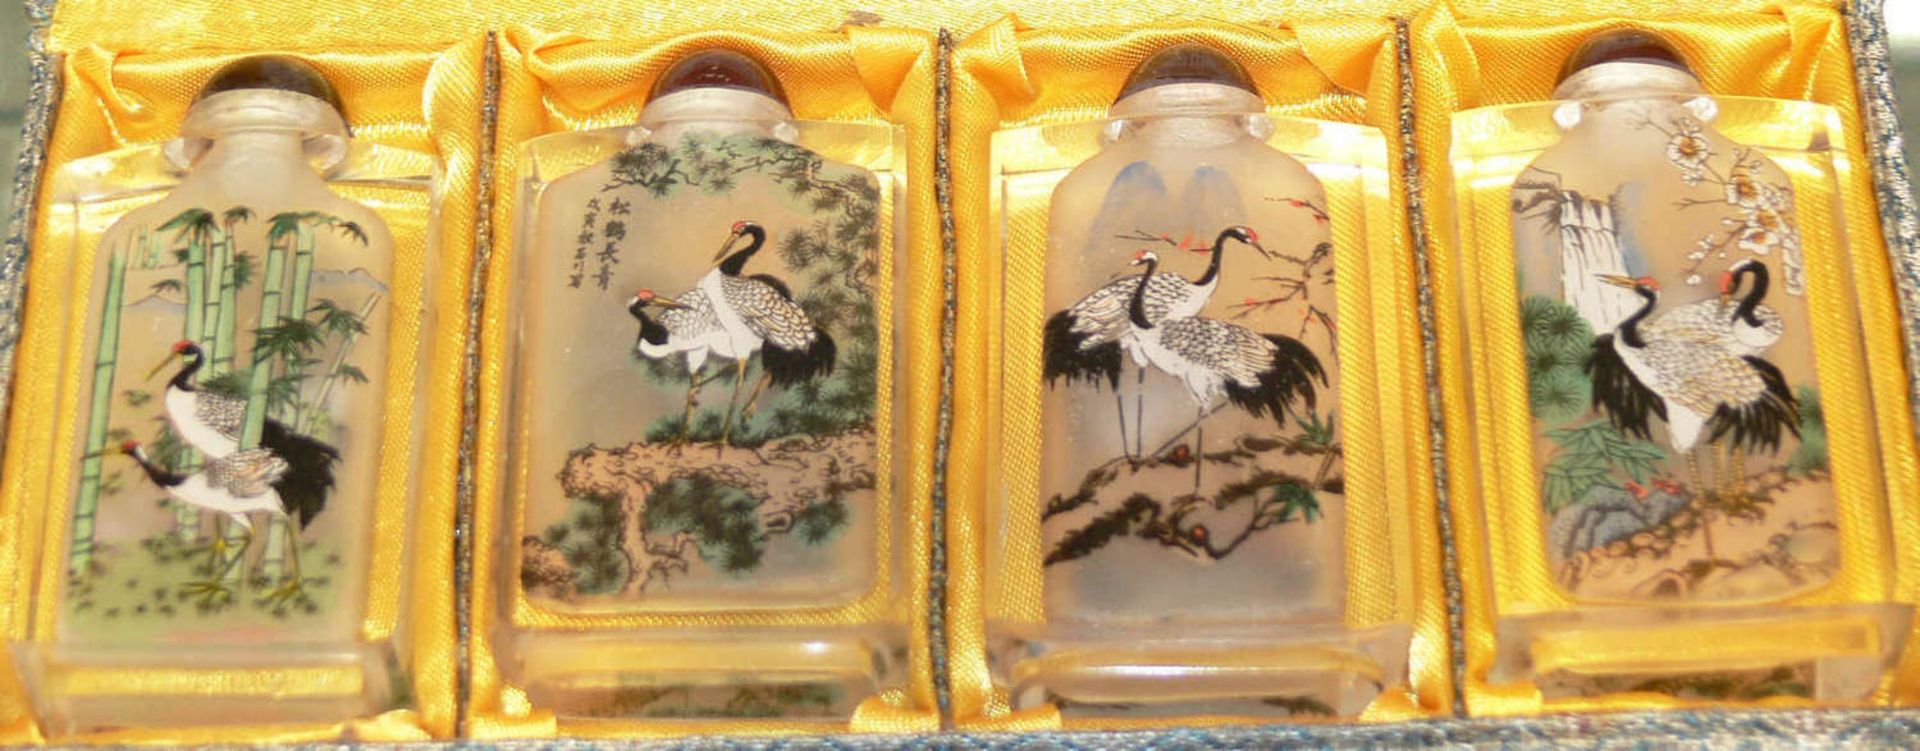 Chinesische Snuff - Bottle - Set. Innen-Glasmalerei, im orig. Etui.Chinese Snuff Bottle Set. - Image 2 of 2